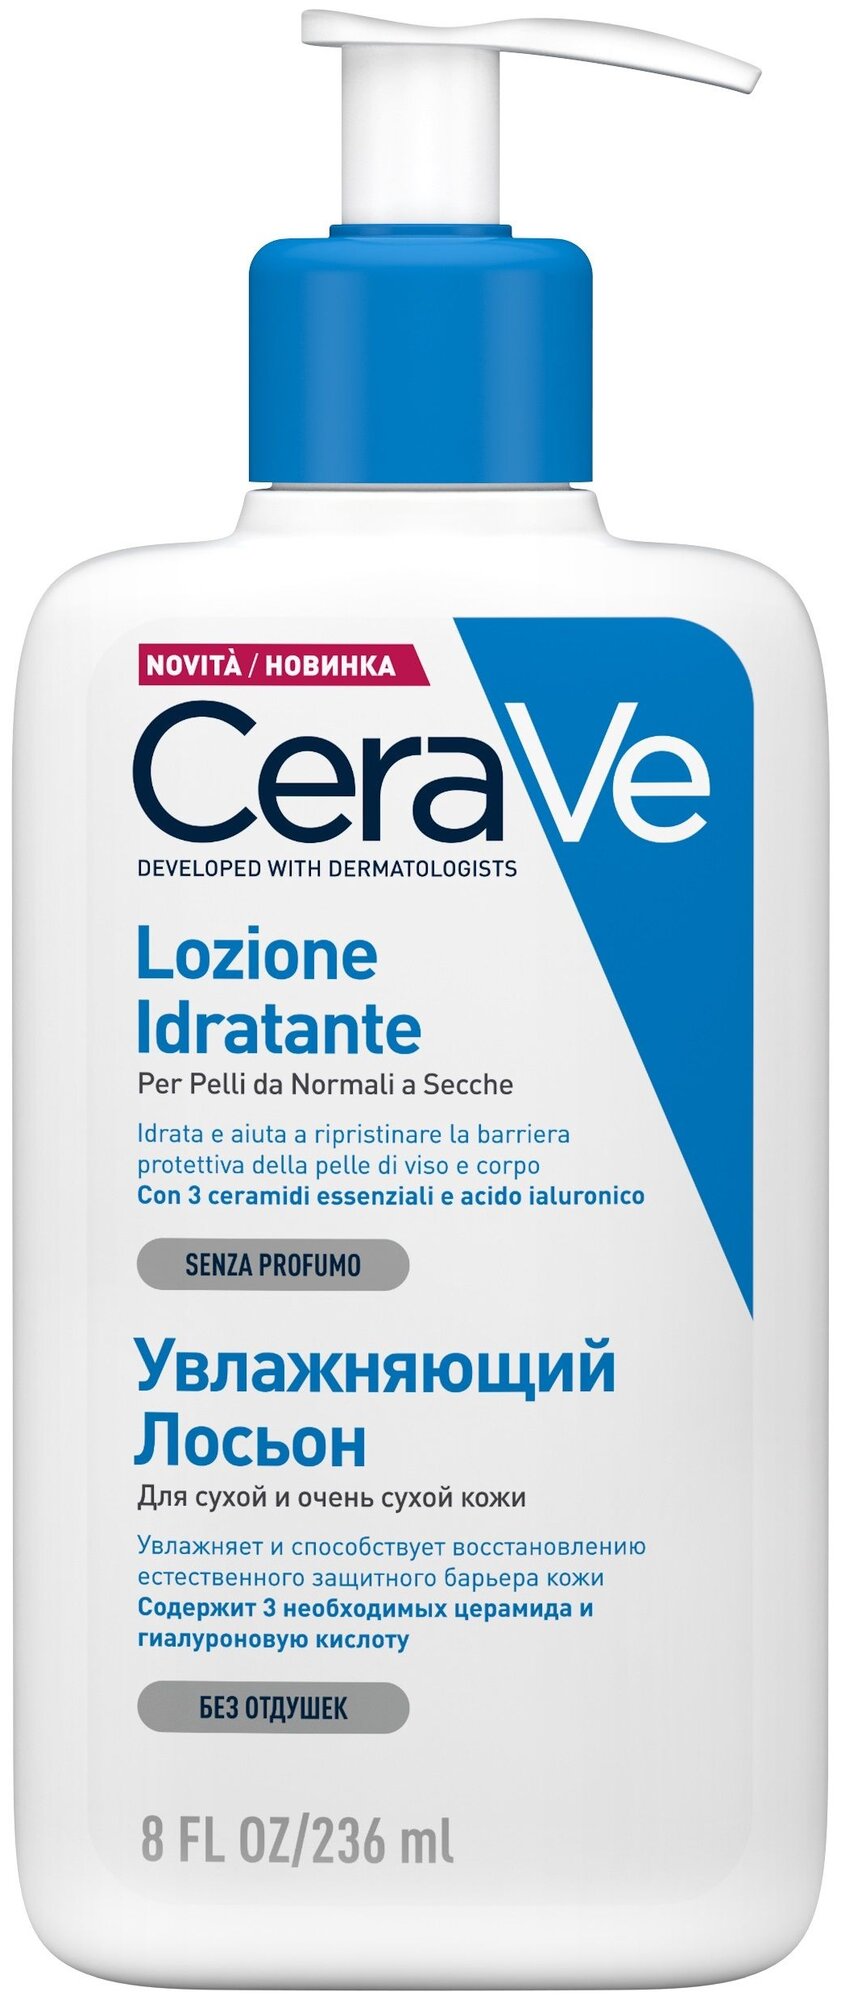 Лосьон CeraVe (Цераве) увлажняющий для сухой и очень сухой кожи лица и тела 236 мл Косметик Актив Продюксьон - фото №3